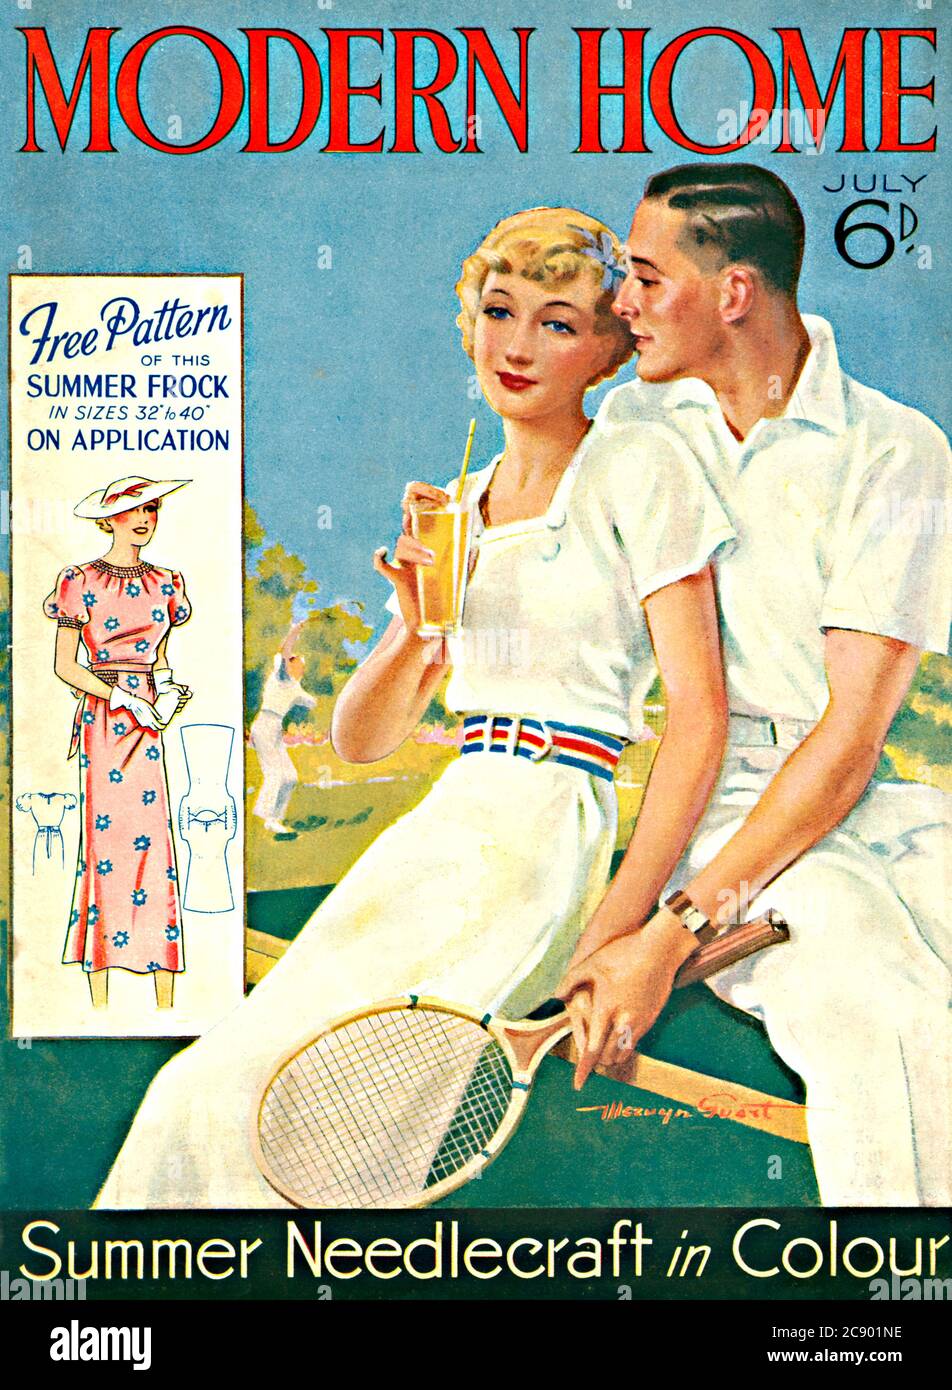 Modern Home, Tennis, 1936 Portada de la revista mensual home, con un patrón gratuito para un ceño de verano y una balsa de aguja en color Foto de stock